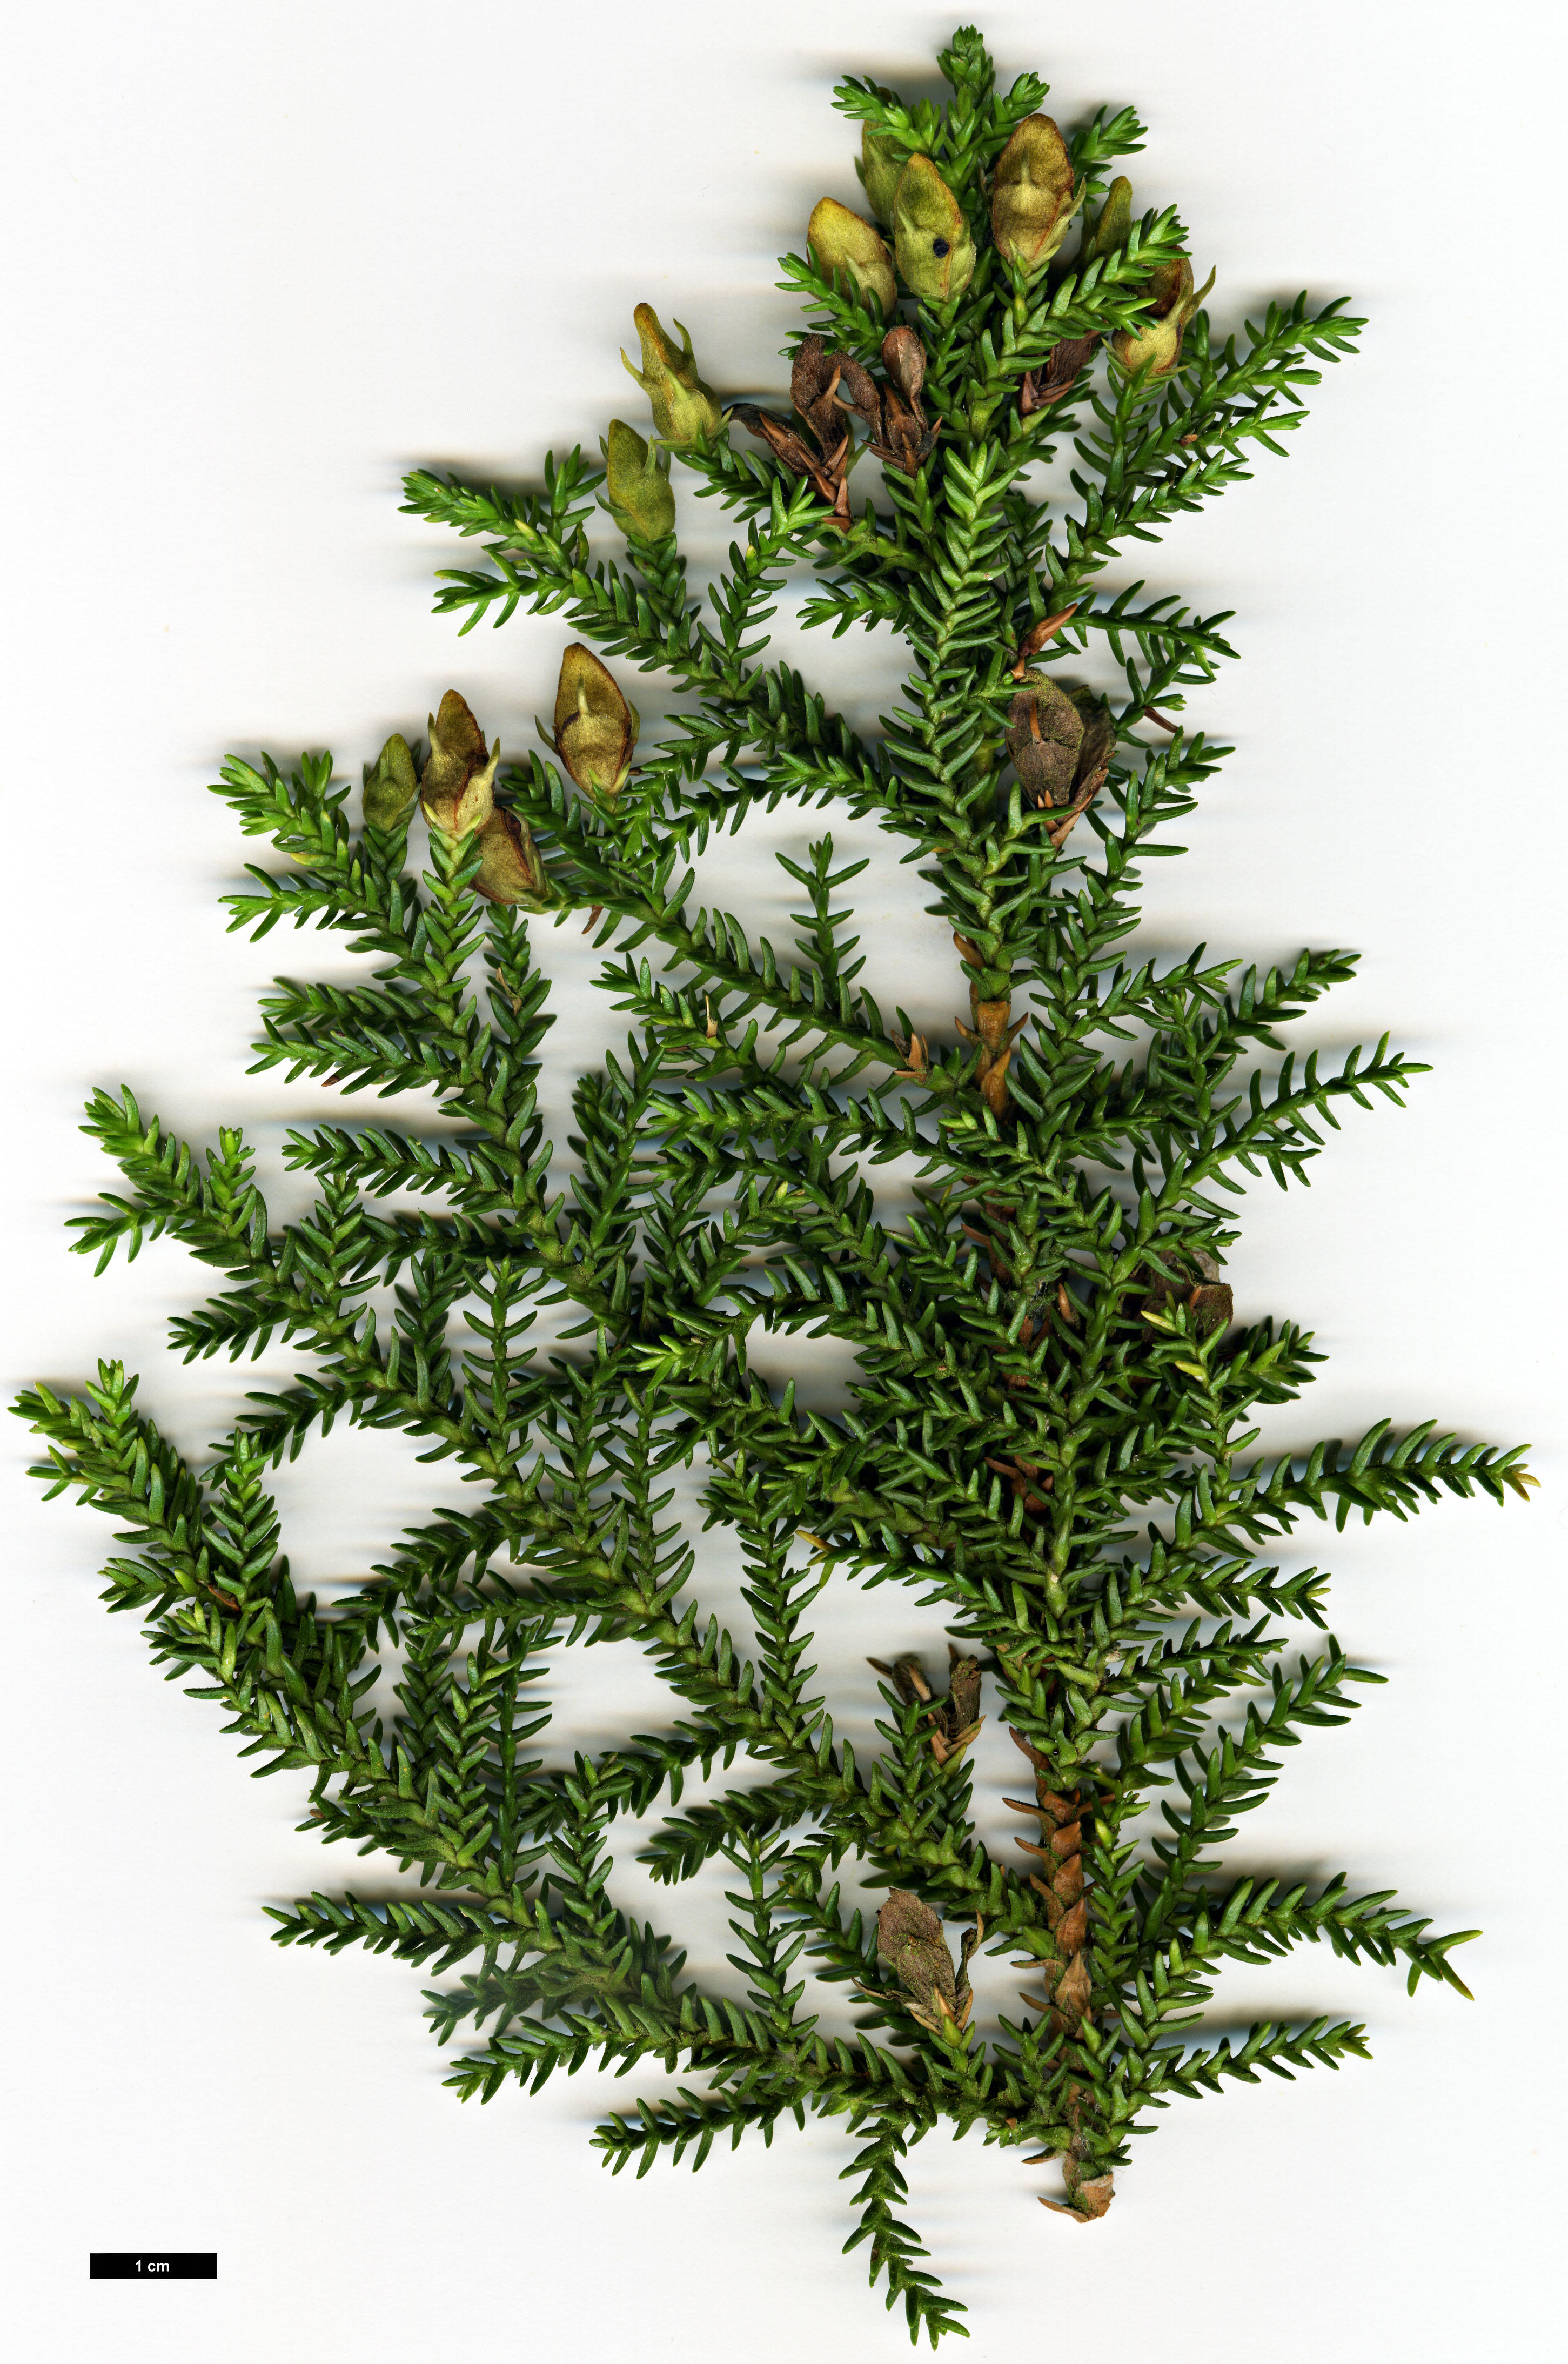 High resolution image: Family: Cupressaceae - Genus: Pilgerodendron - Taxon: uviferum